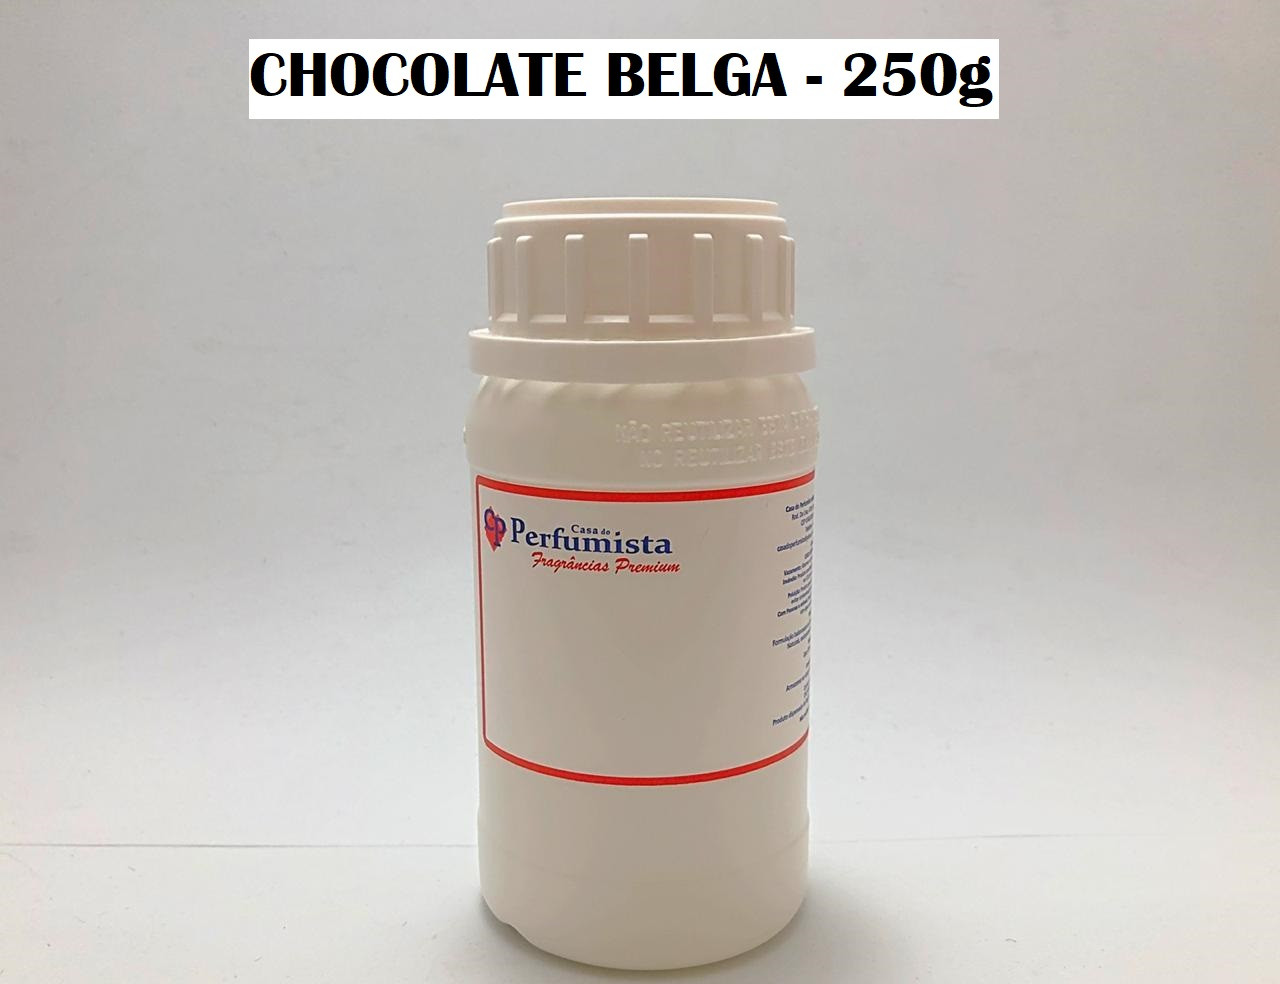 CHOCOLATE BELGA - 250g